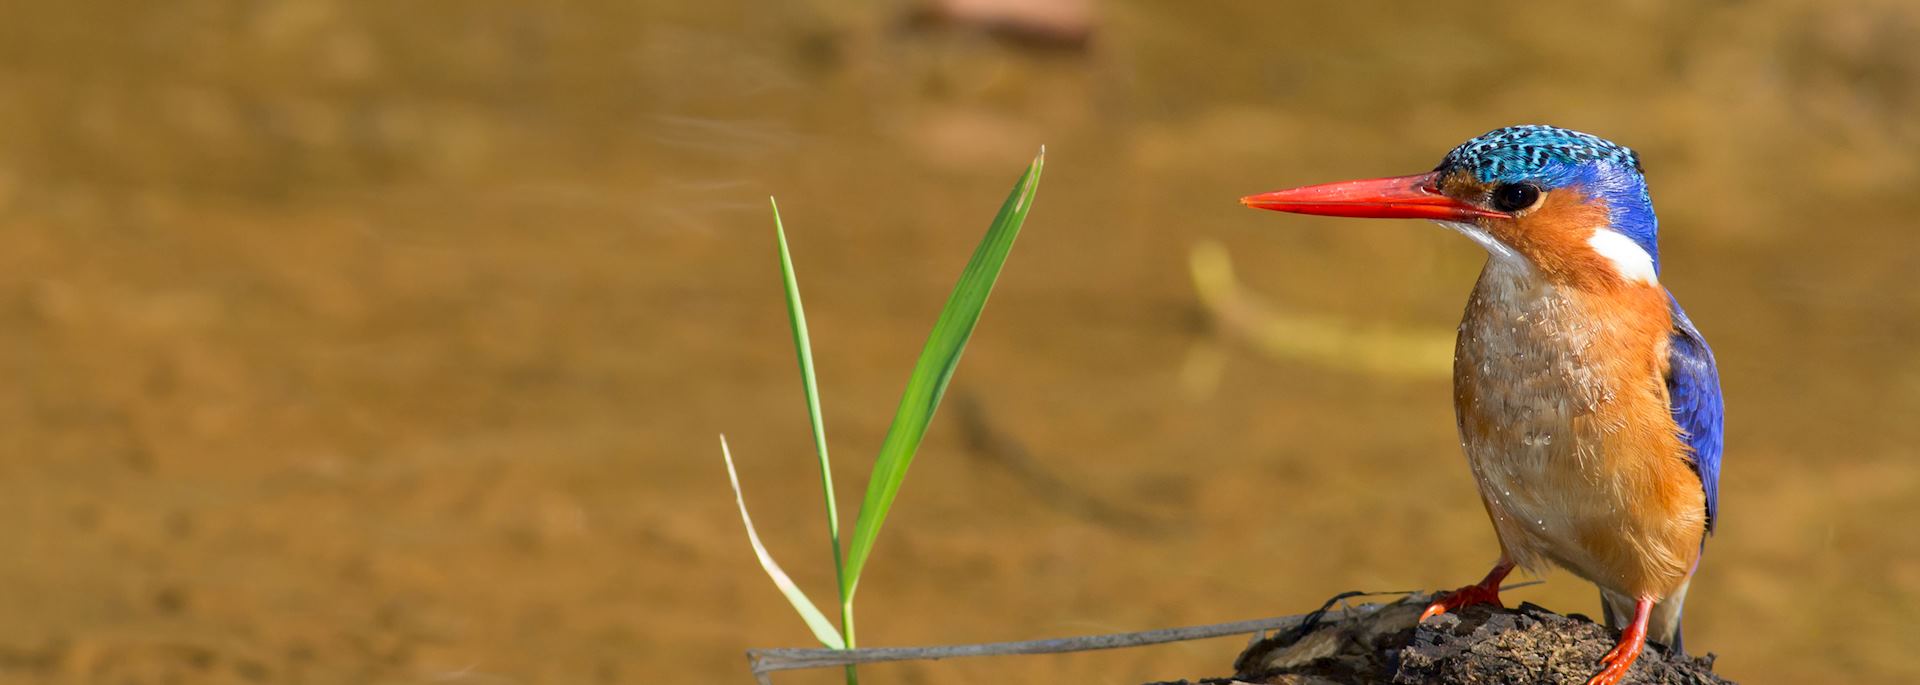 Malachite kingfisher, iSimangaliso Wetland Park